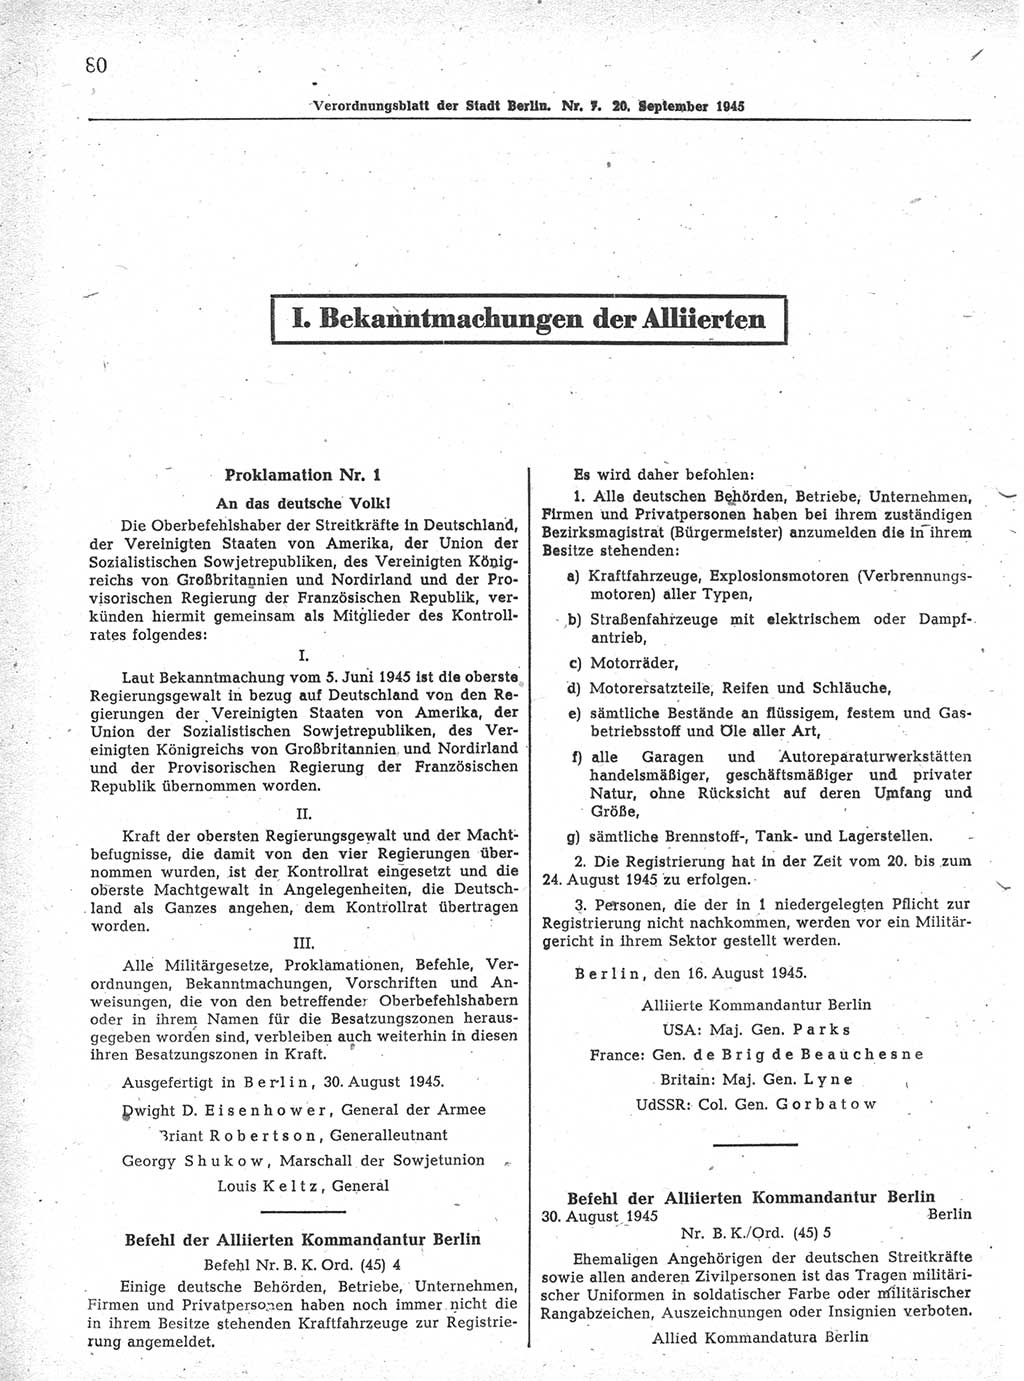 Verordnungsblatt (VOBl.) der Stadt Berlin 1945, Seite 80 (VOBl. Bln. 1945, S. 80)